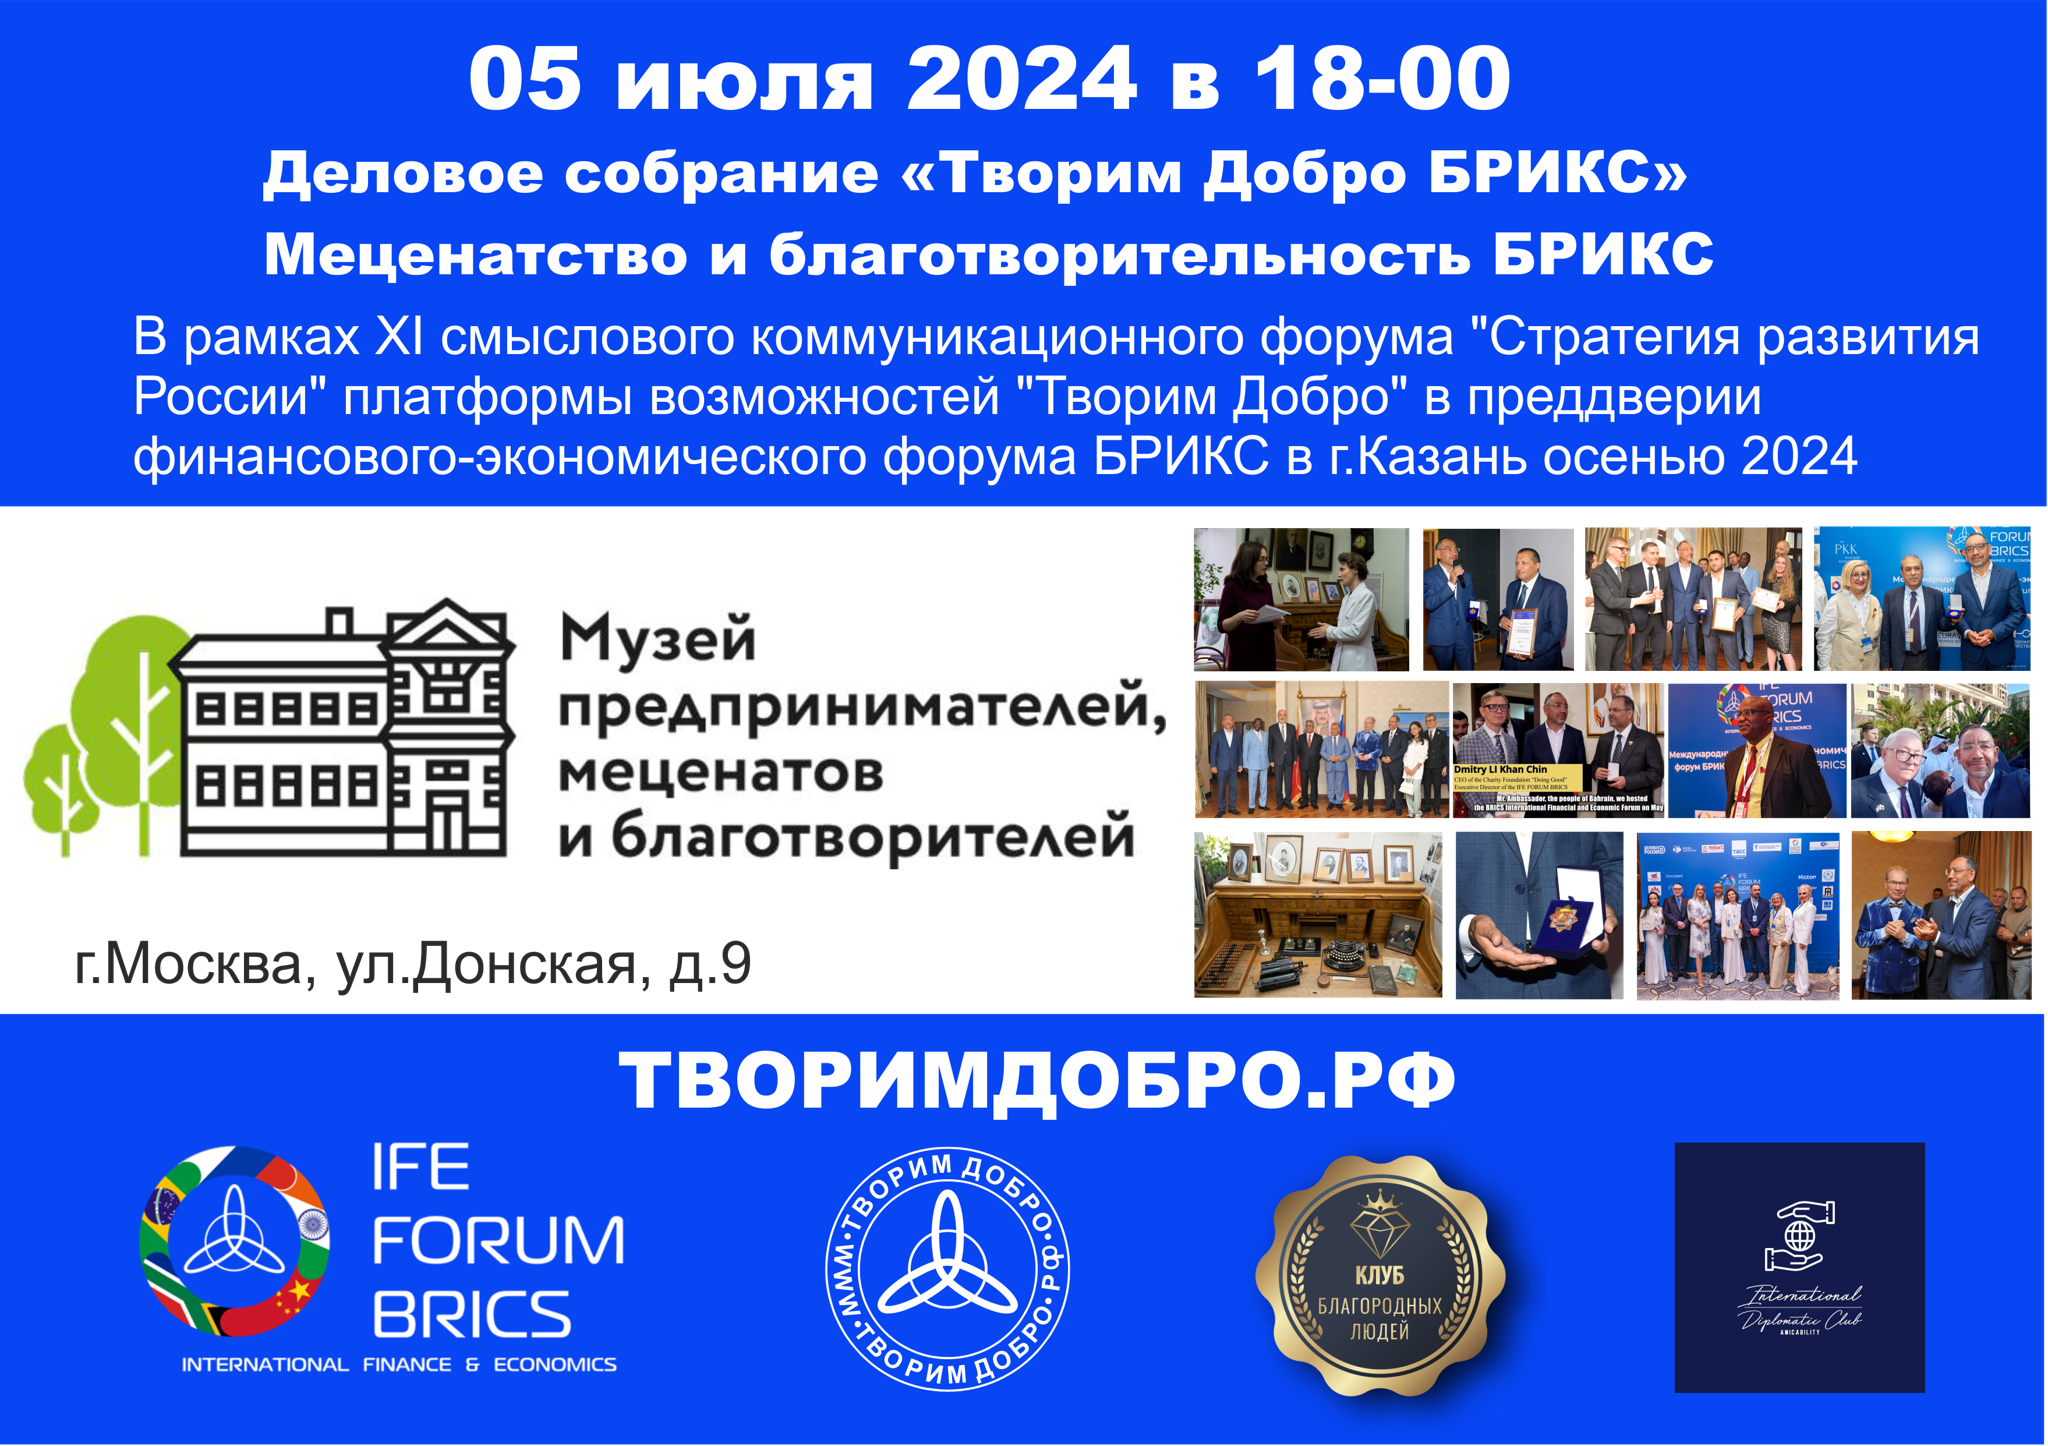 0 2024 "Меценатство и благотворительность БРИКС" в Музее предпринимателей, меценатов и благотворителей